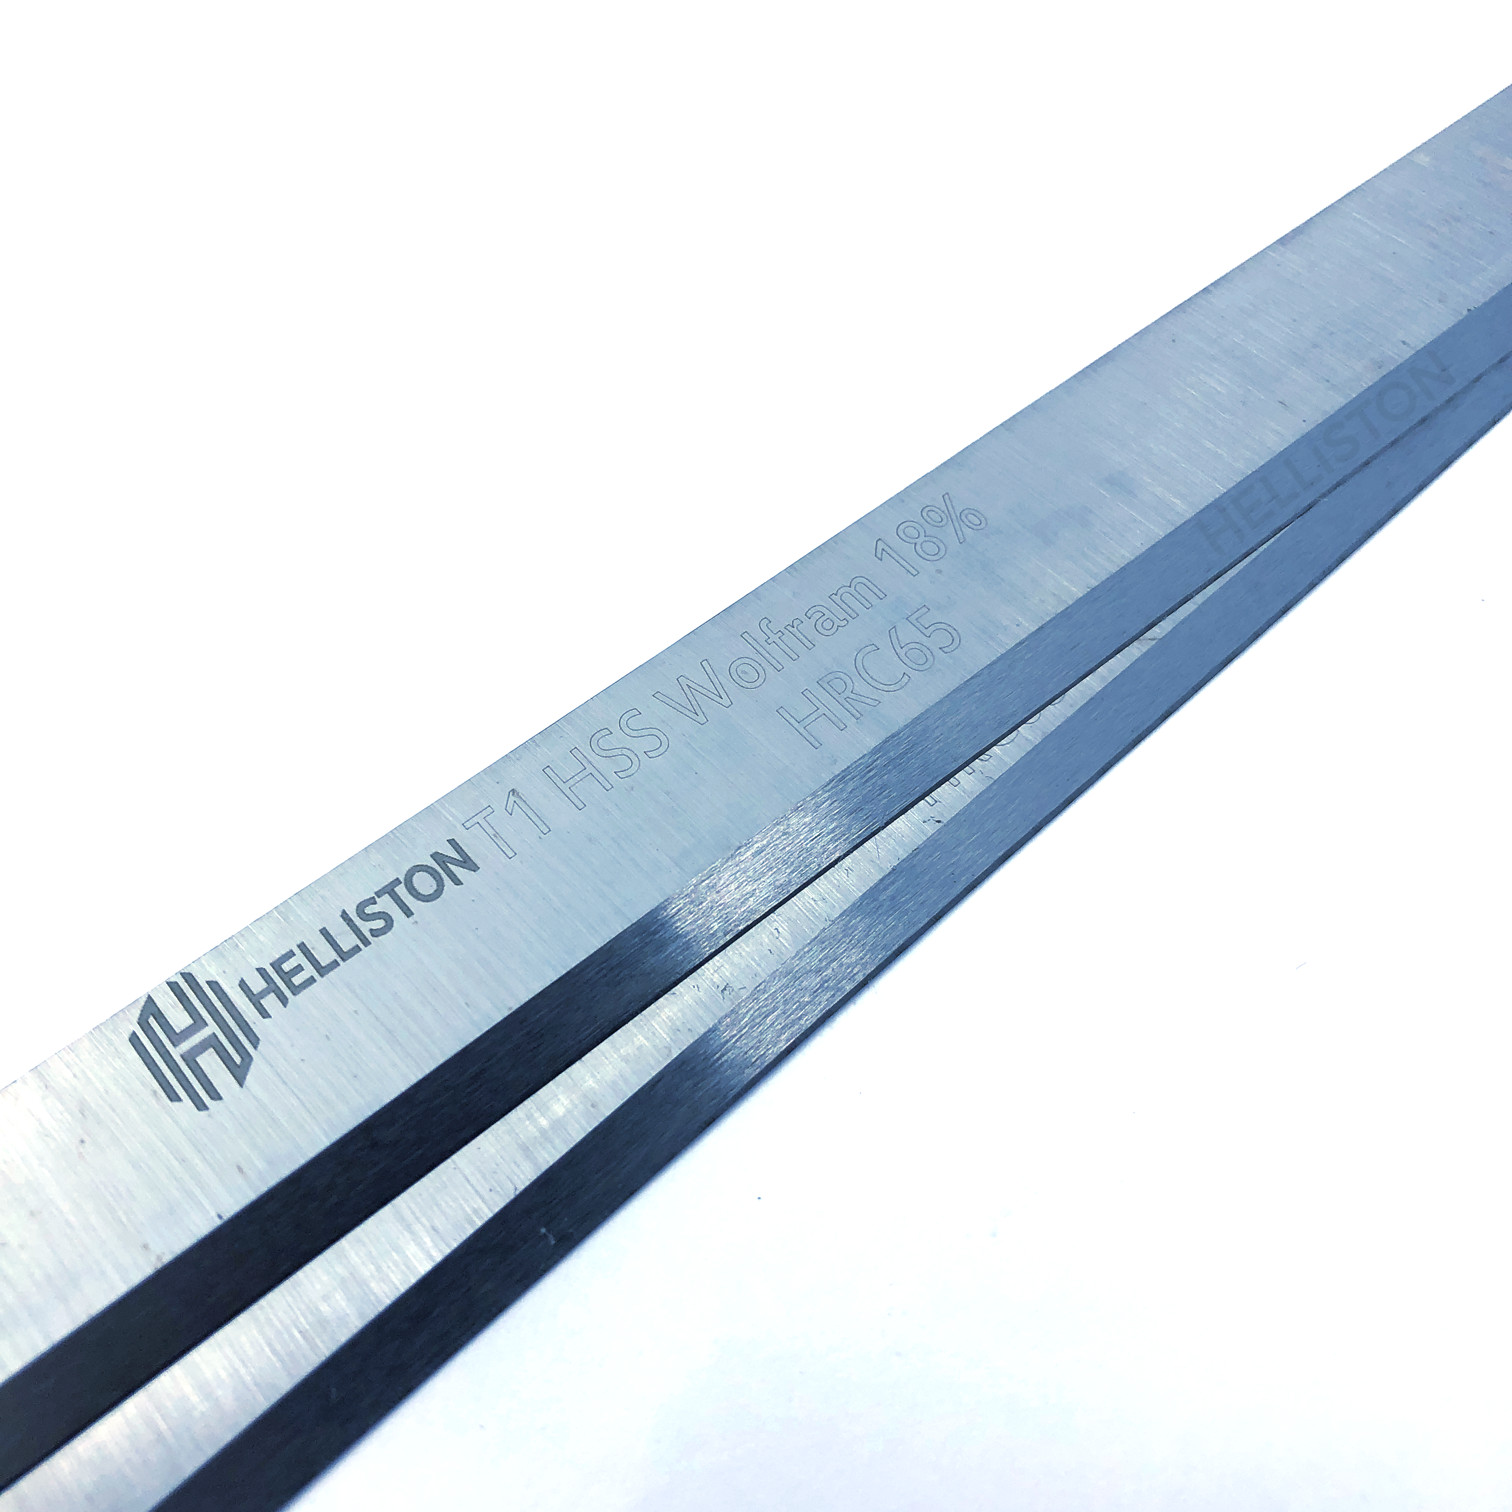 Scheppach HMT260 HSS Planer Blades Knives 260 x 18 x 3 mm 